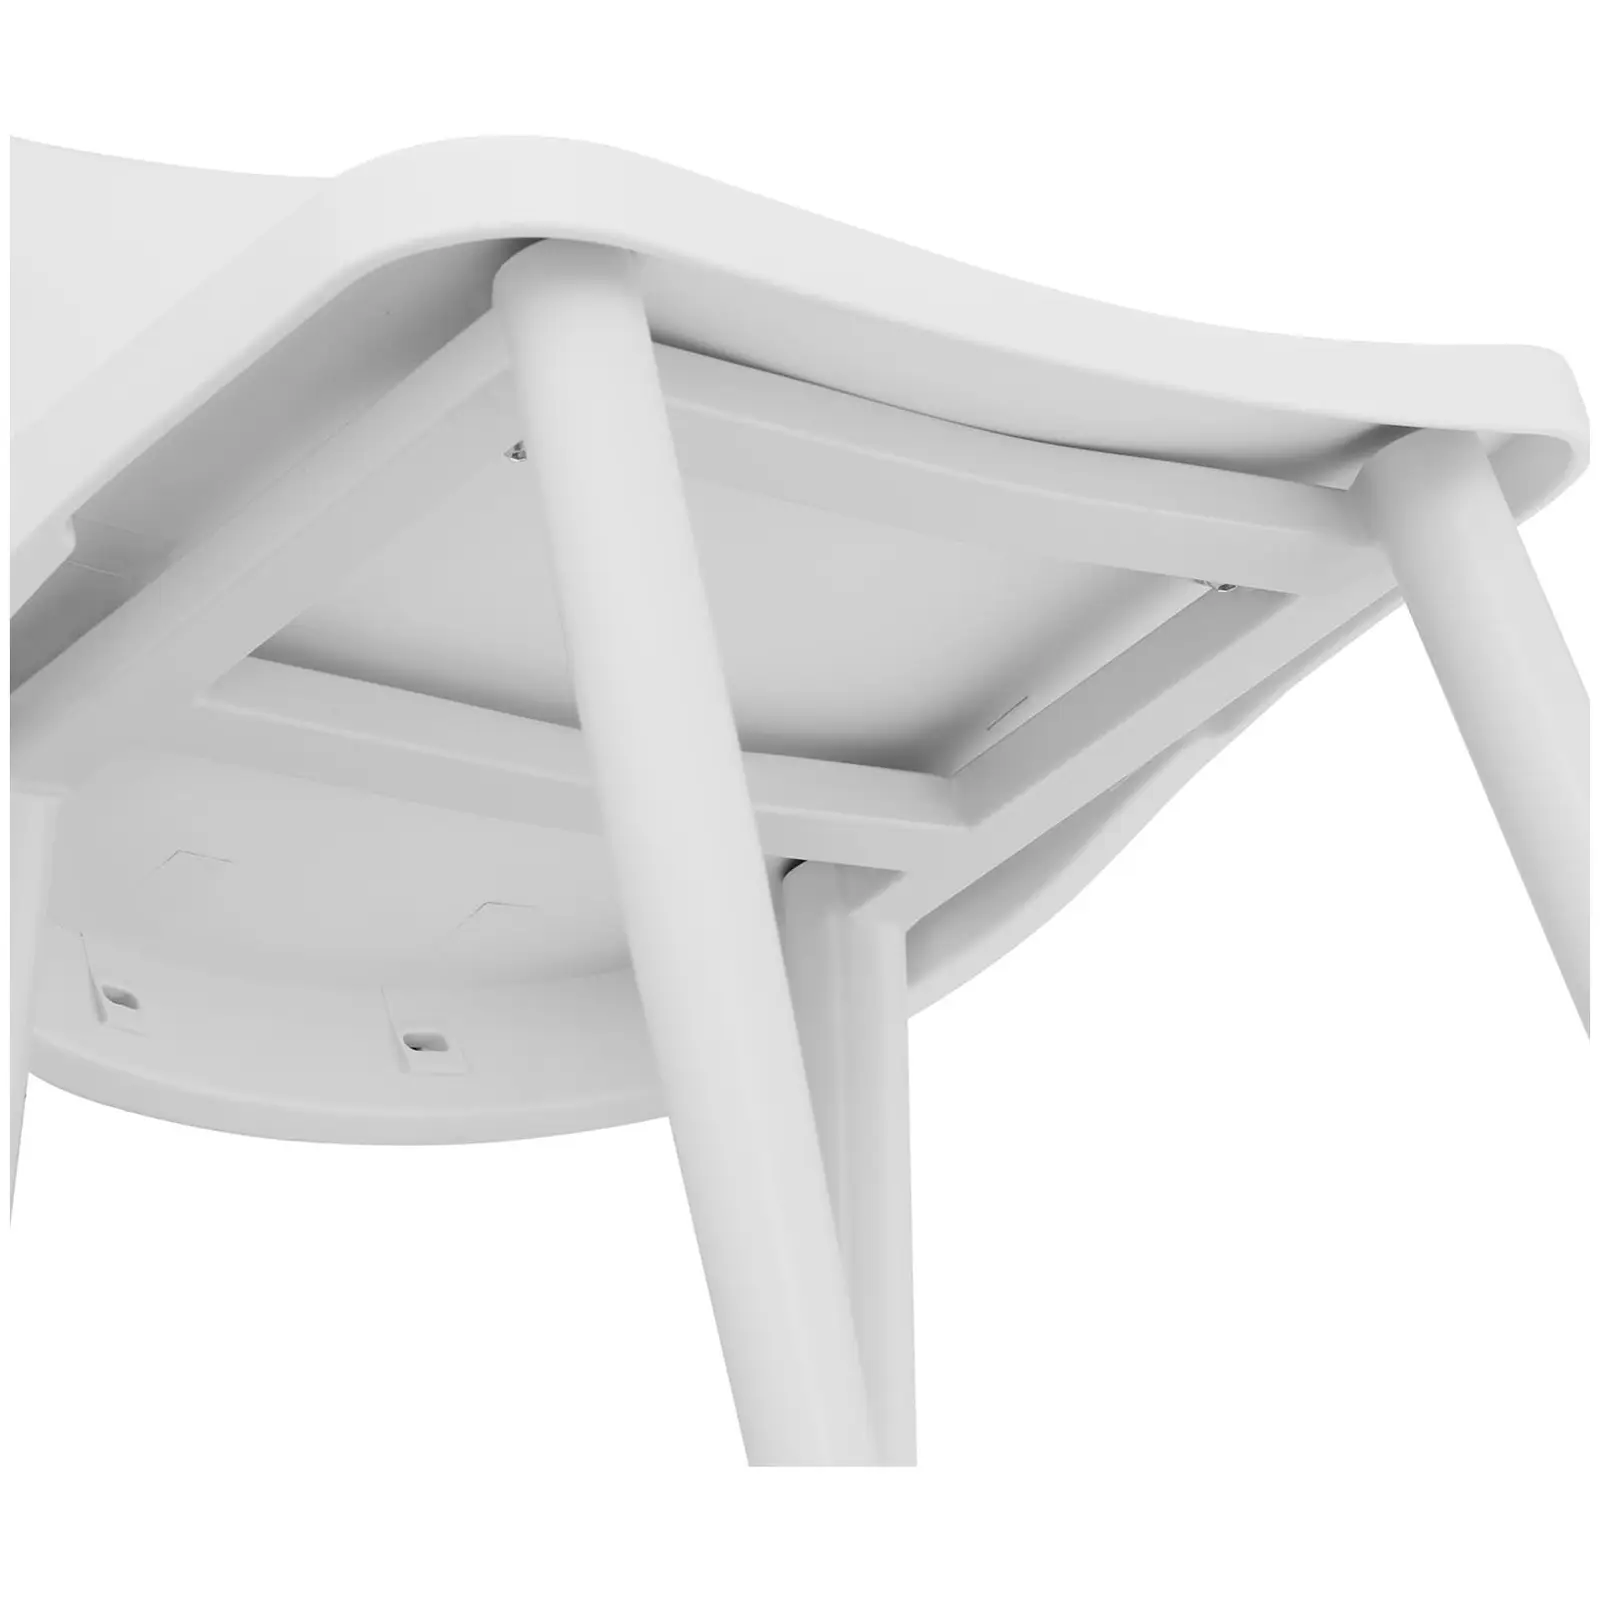 Stol - Set med 2 - Upp till 150 kg - Sittyta 56 x 46,5 cm - Svartvit